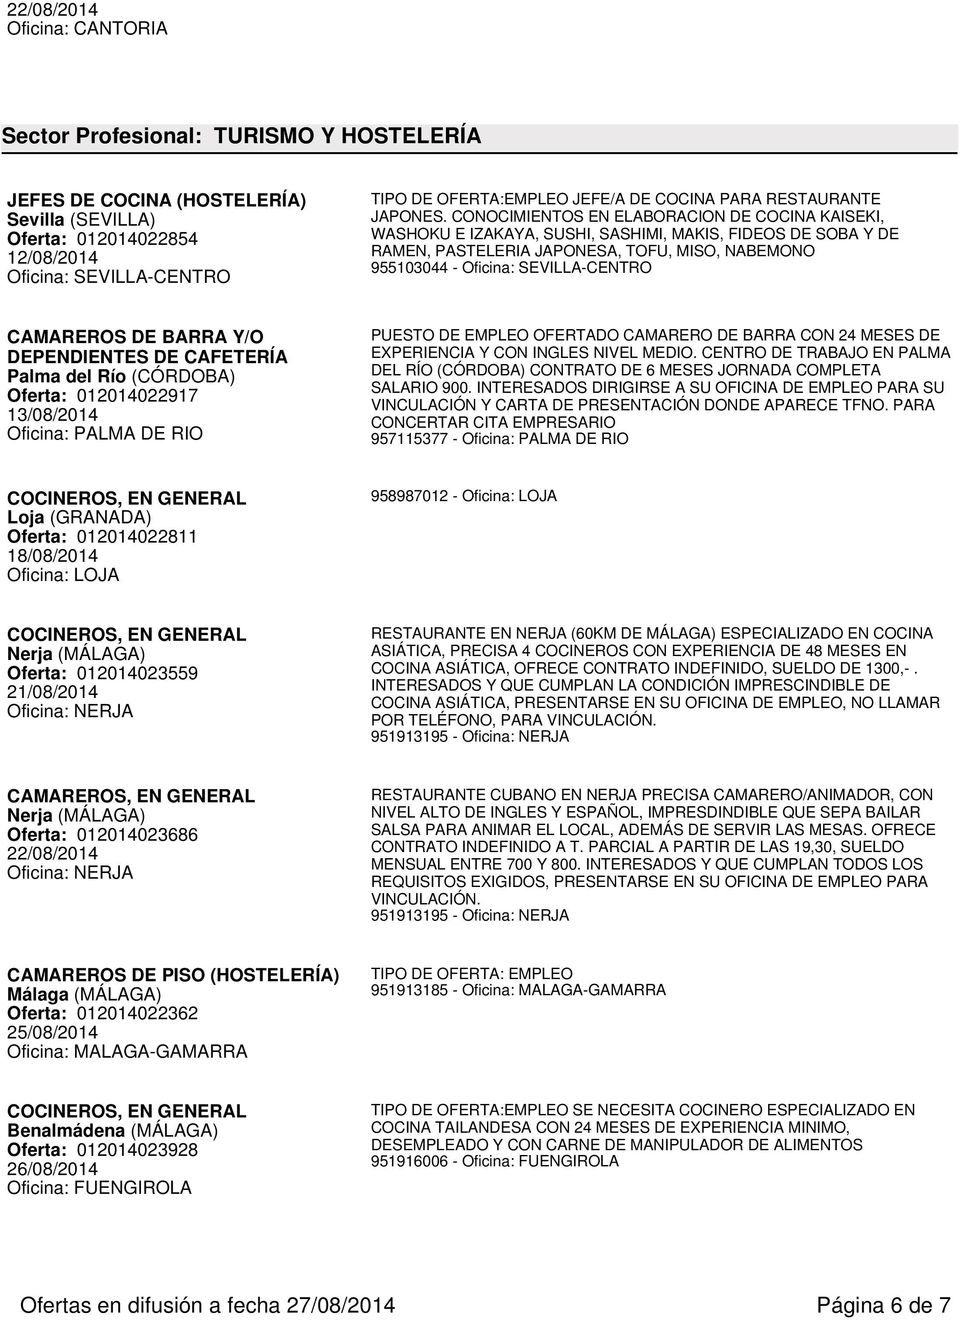 CAMAREROS DE BARRA Y/O DEPENDIENTES DE CAFETERÍA Palma del Río (CÓRDOBA) Oferta: 012014022917 13/08/2014 Oficina: PALMA DE RIO PUESTO DE EMPLEO OFERTADO CAMARERO DE BARRA CON 24 MESES DE EXPERIENCIA